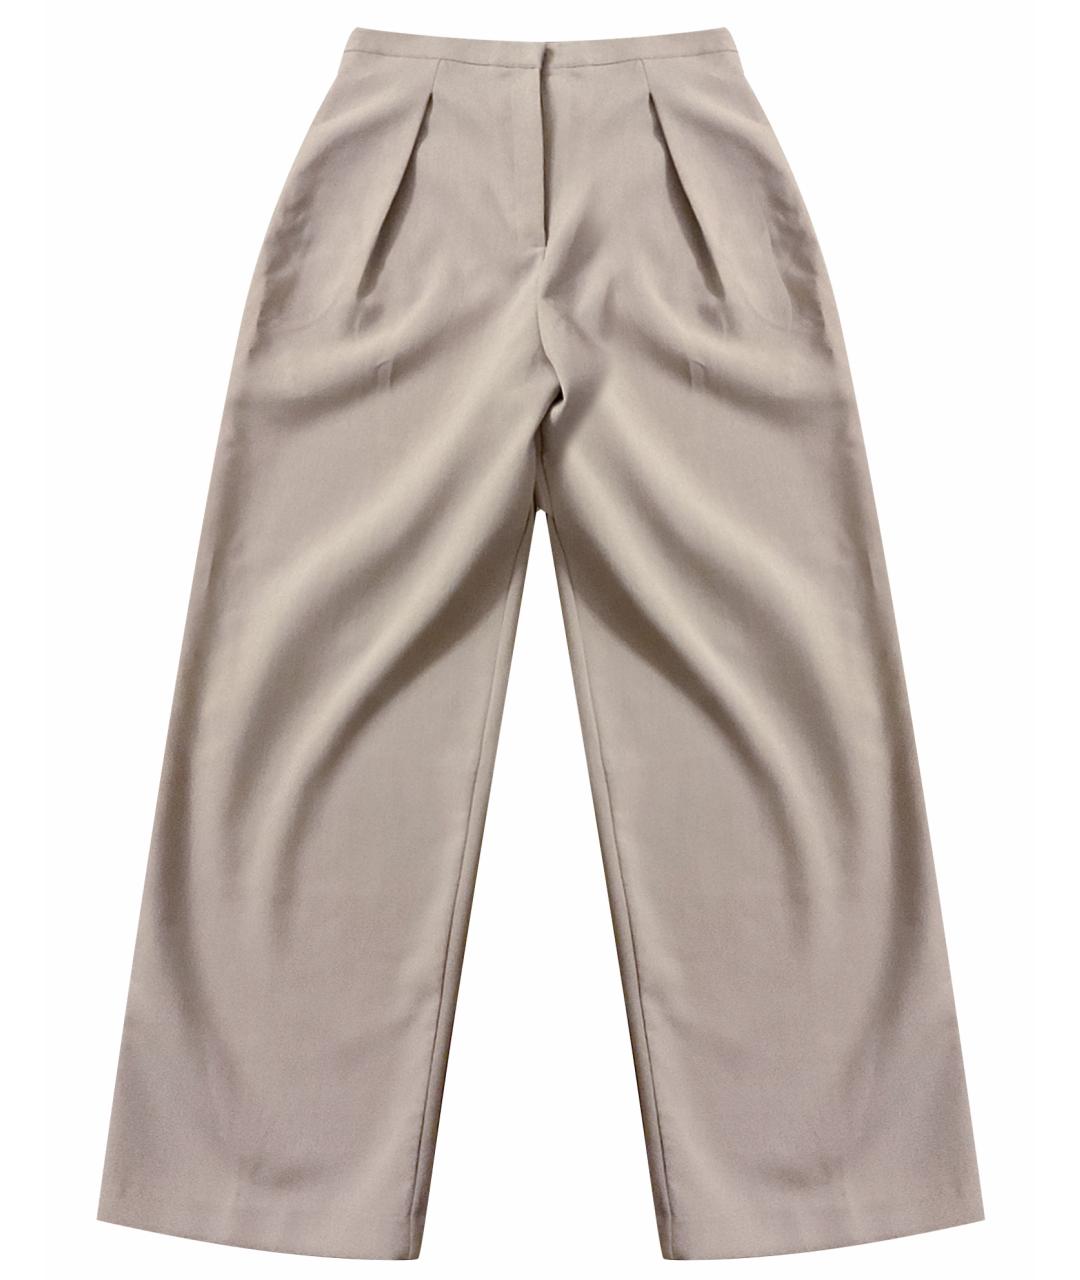 THE FRANKIE SHOP Серые полиэстеровые брюки широкие, фото 1